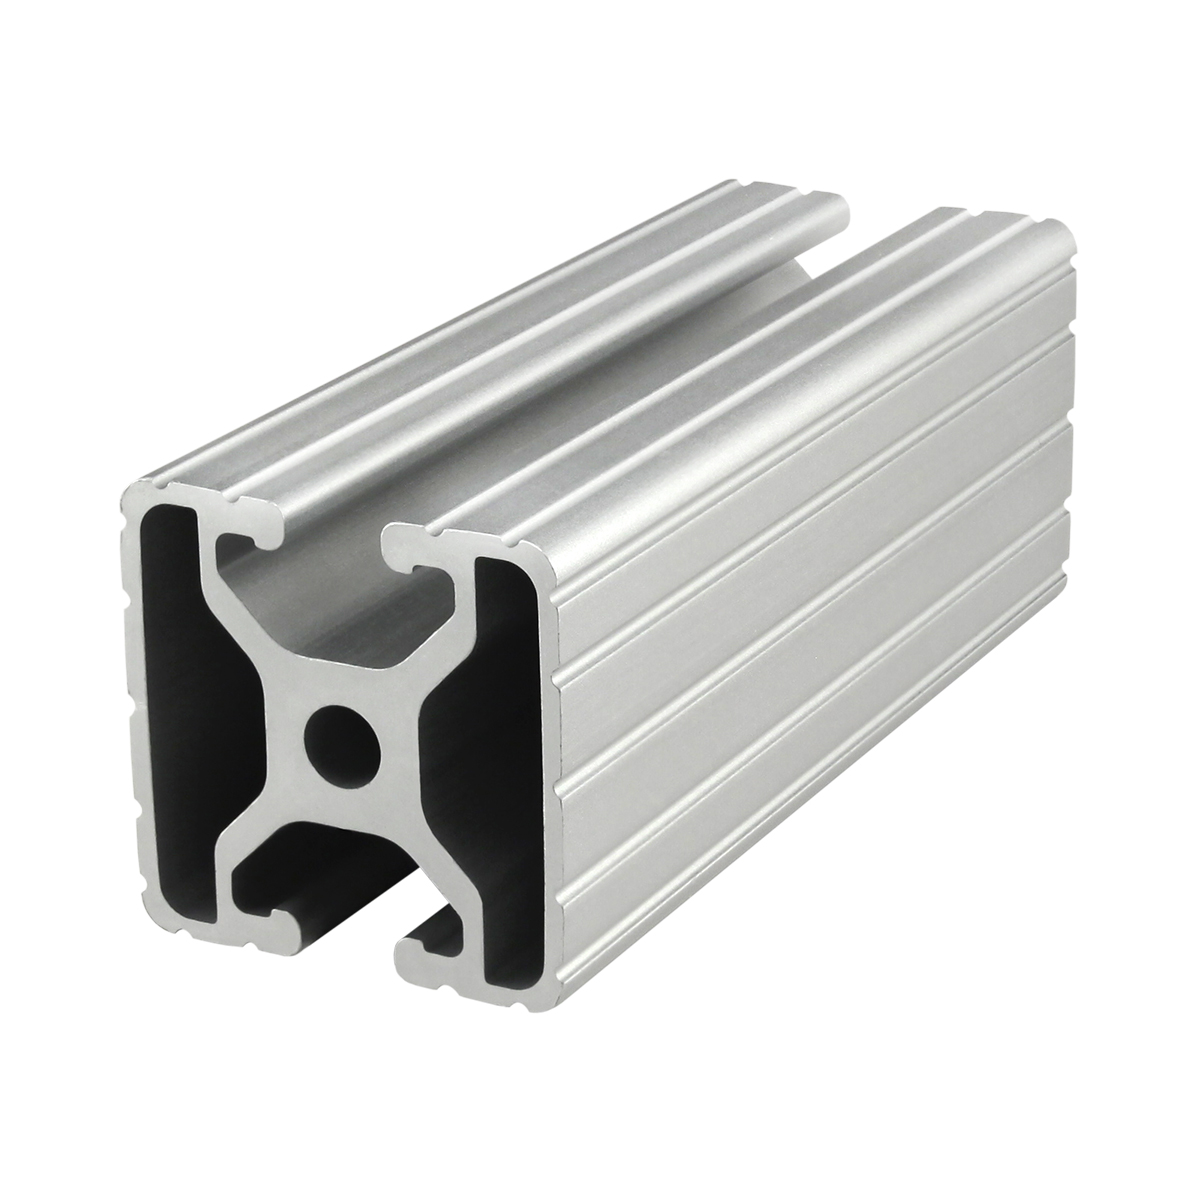 Series Aluminum Extrusion Profiles T Slot Framing Air Inc